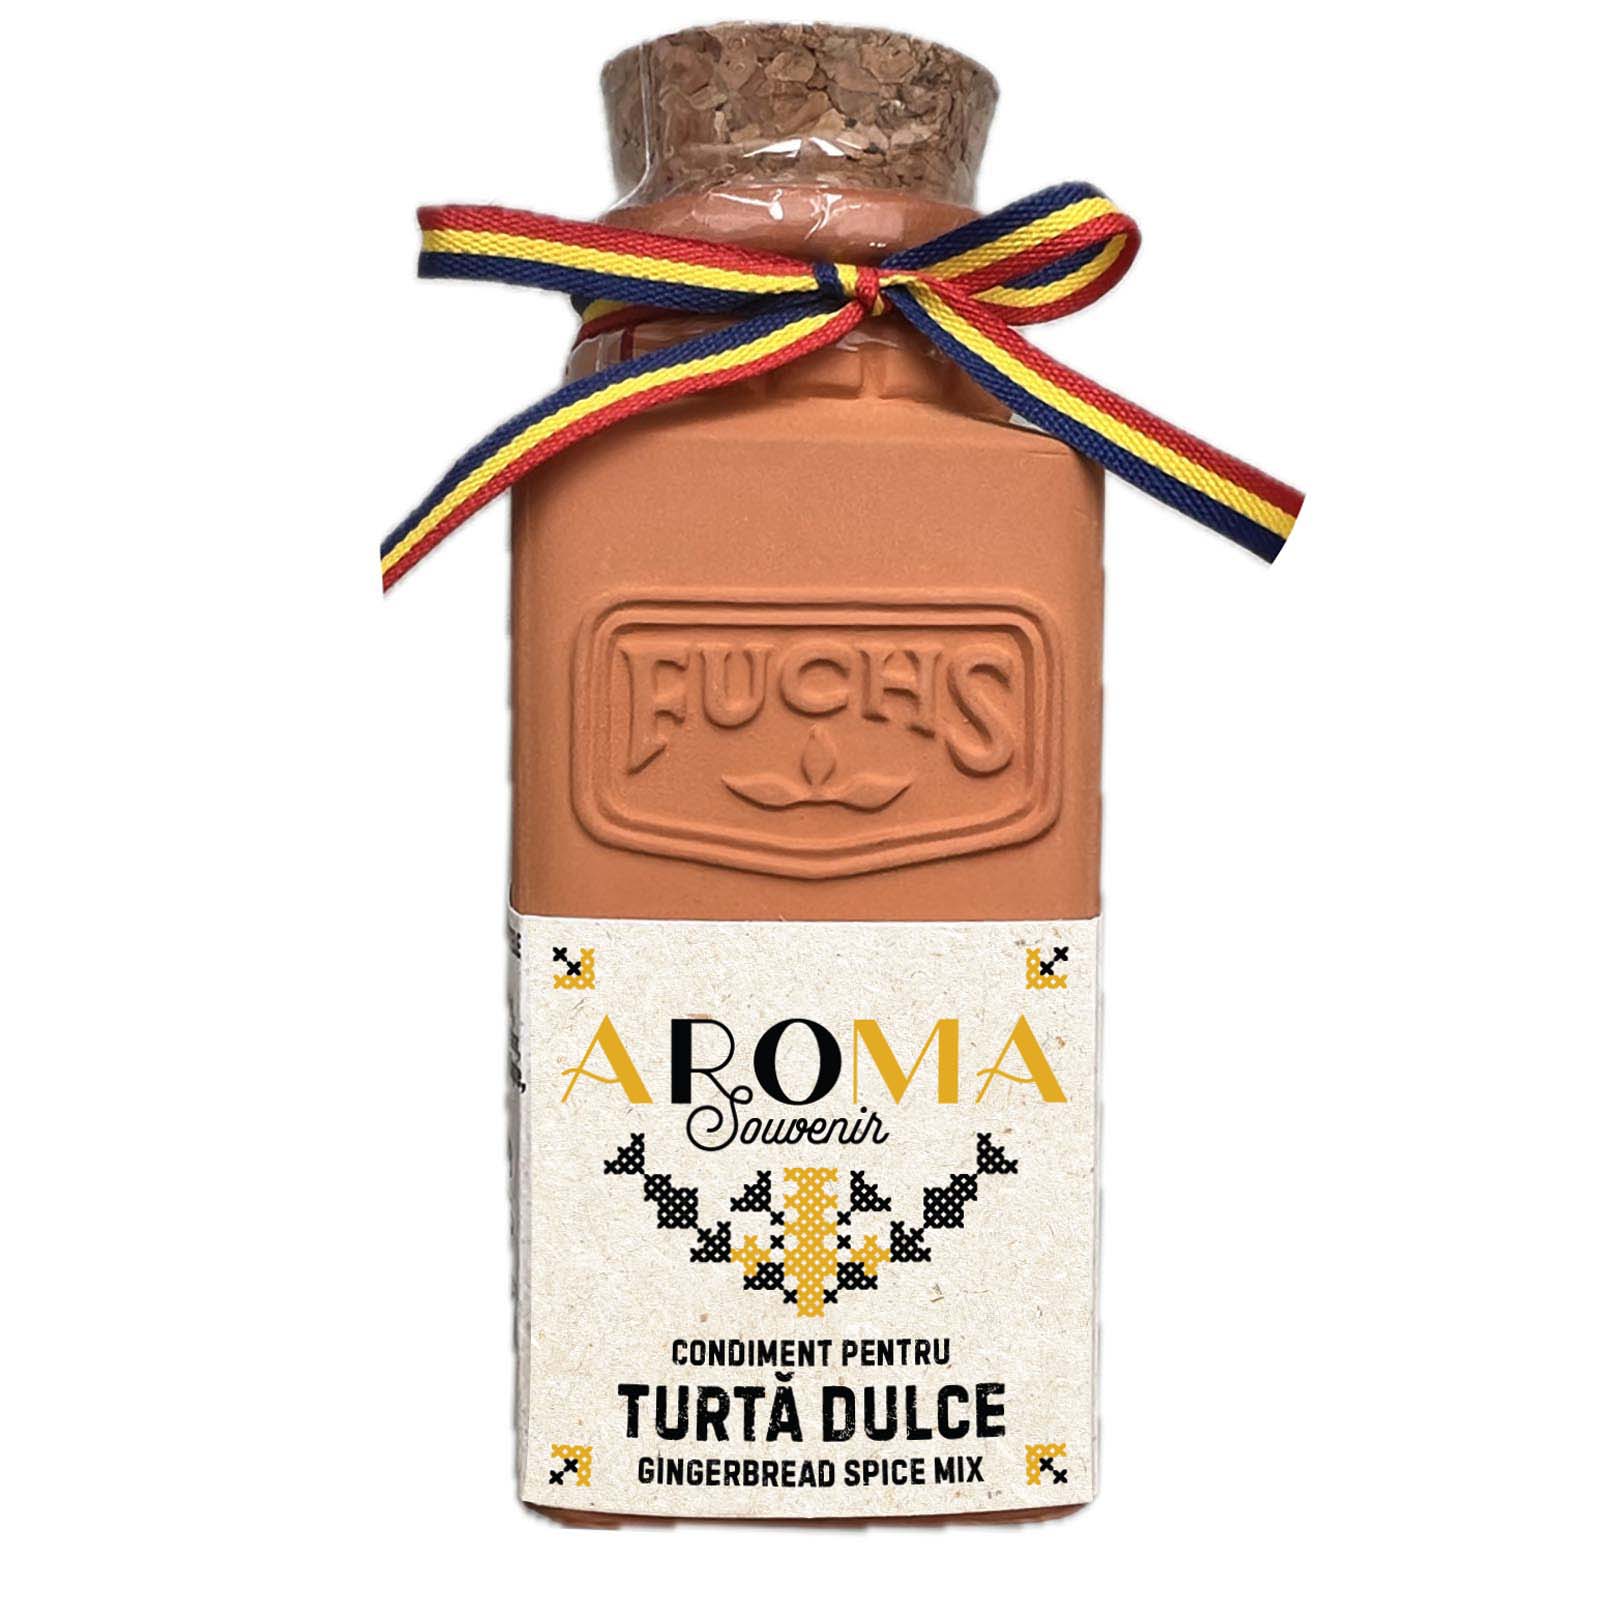 Aroma souvenir, Condiment pentru Turta dulce, Fuchs, 55 g